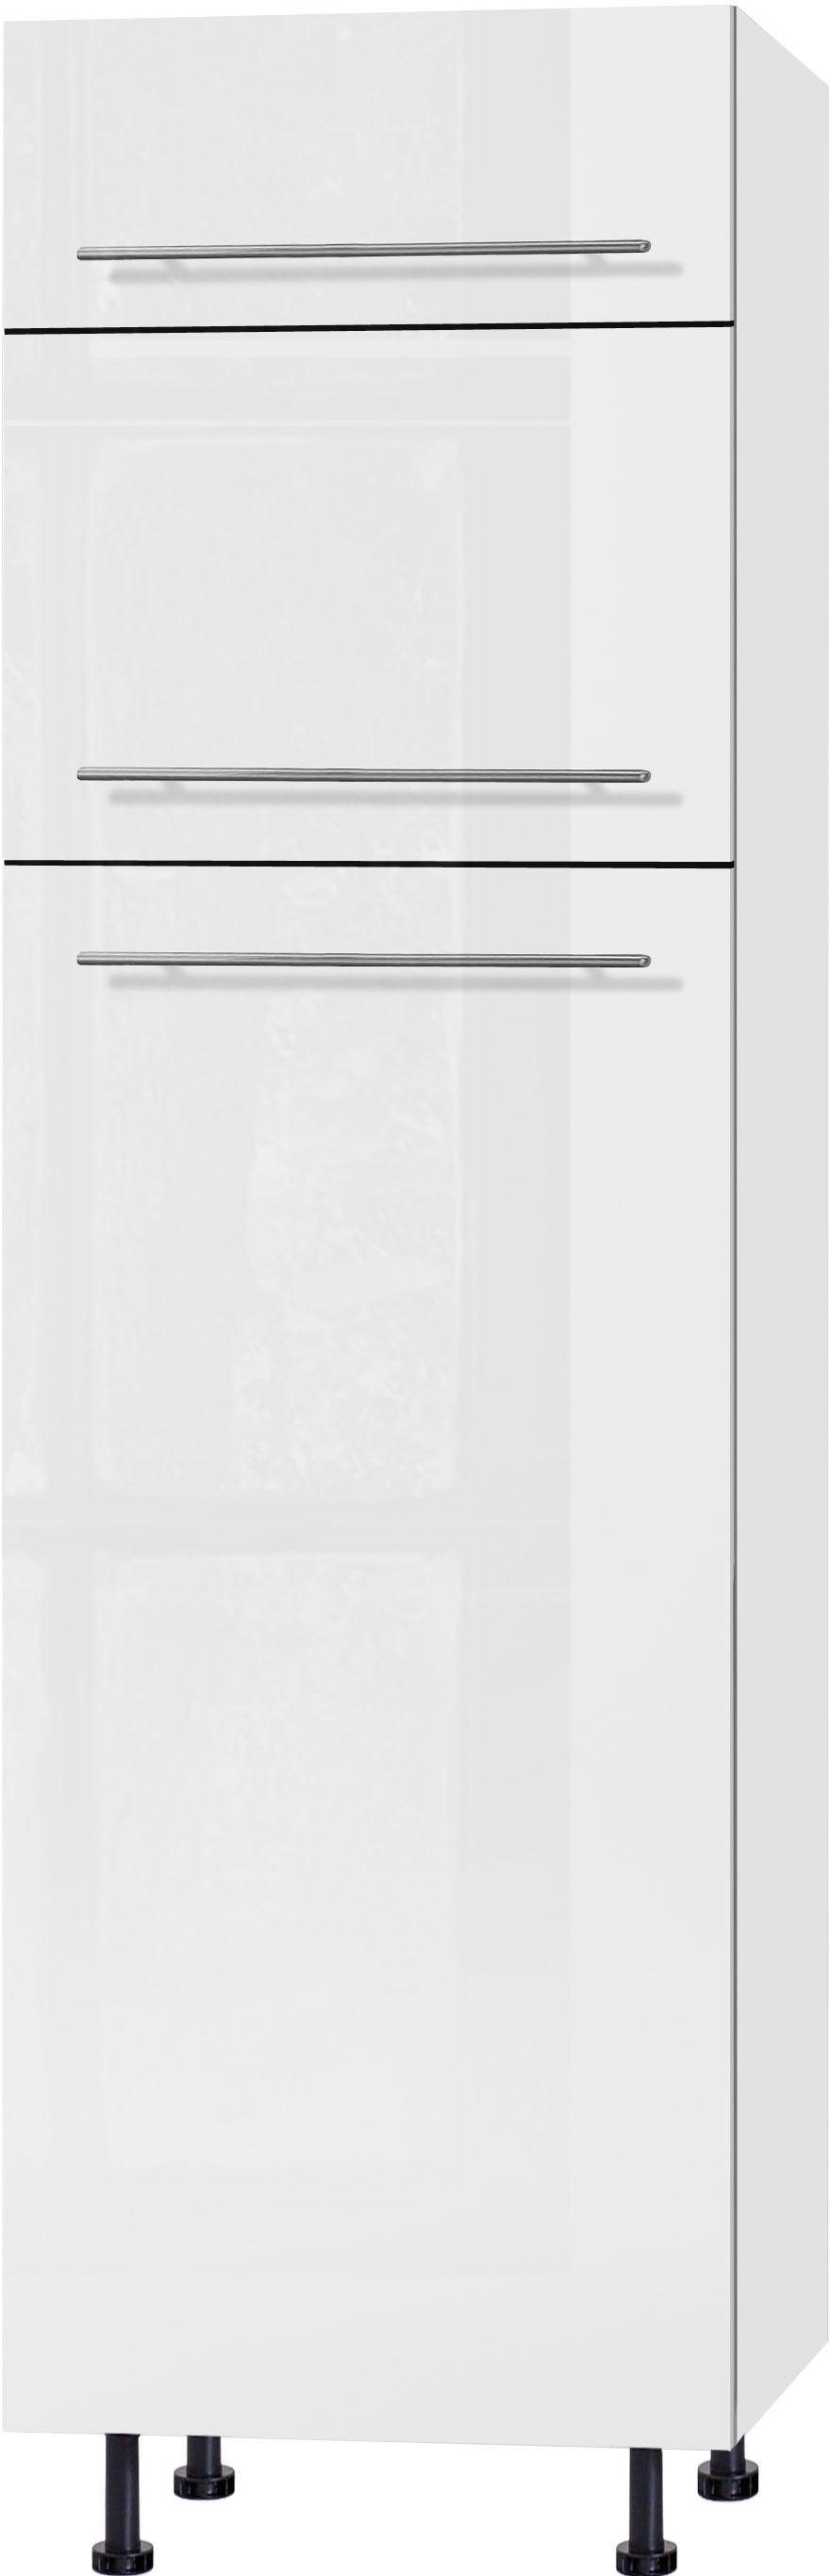 OPTIFIT Kühlumbauschrank Bern 60 cm breit, 212 cm hoch, mit höhenverstellbaren Stellfüßen weiß Hochglanz/weiß | weiß